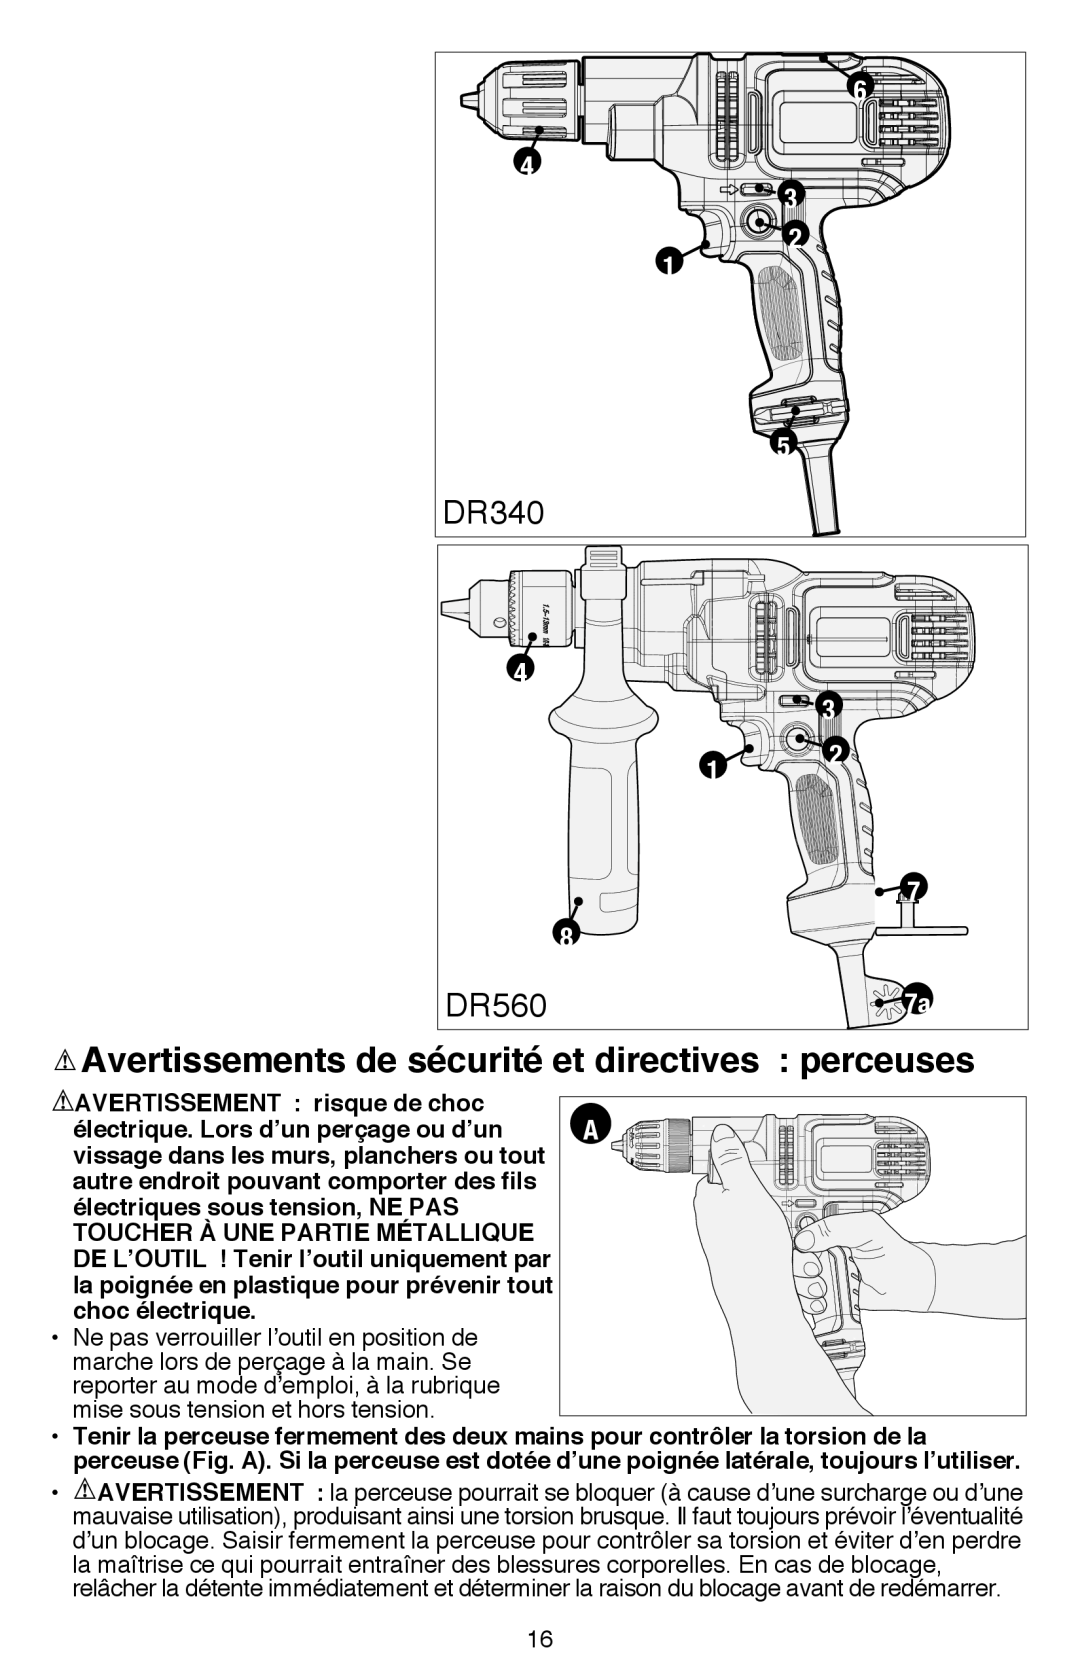 Black & Decker DR260BR instruction manual DR340, DR560, AVERTISSEMENT risque de choc 